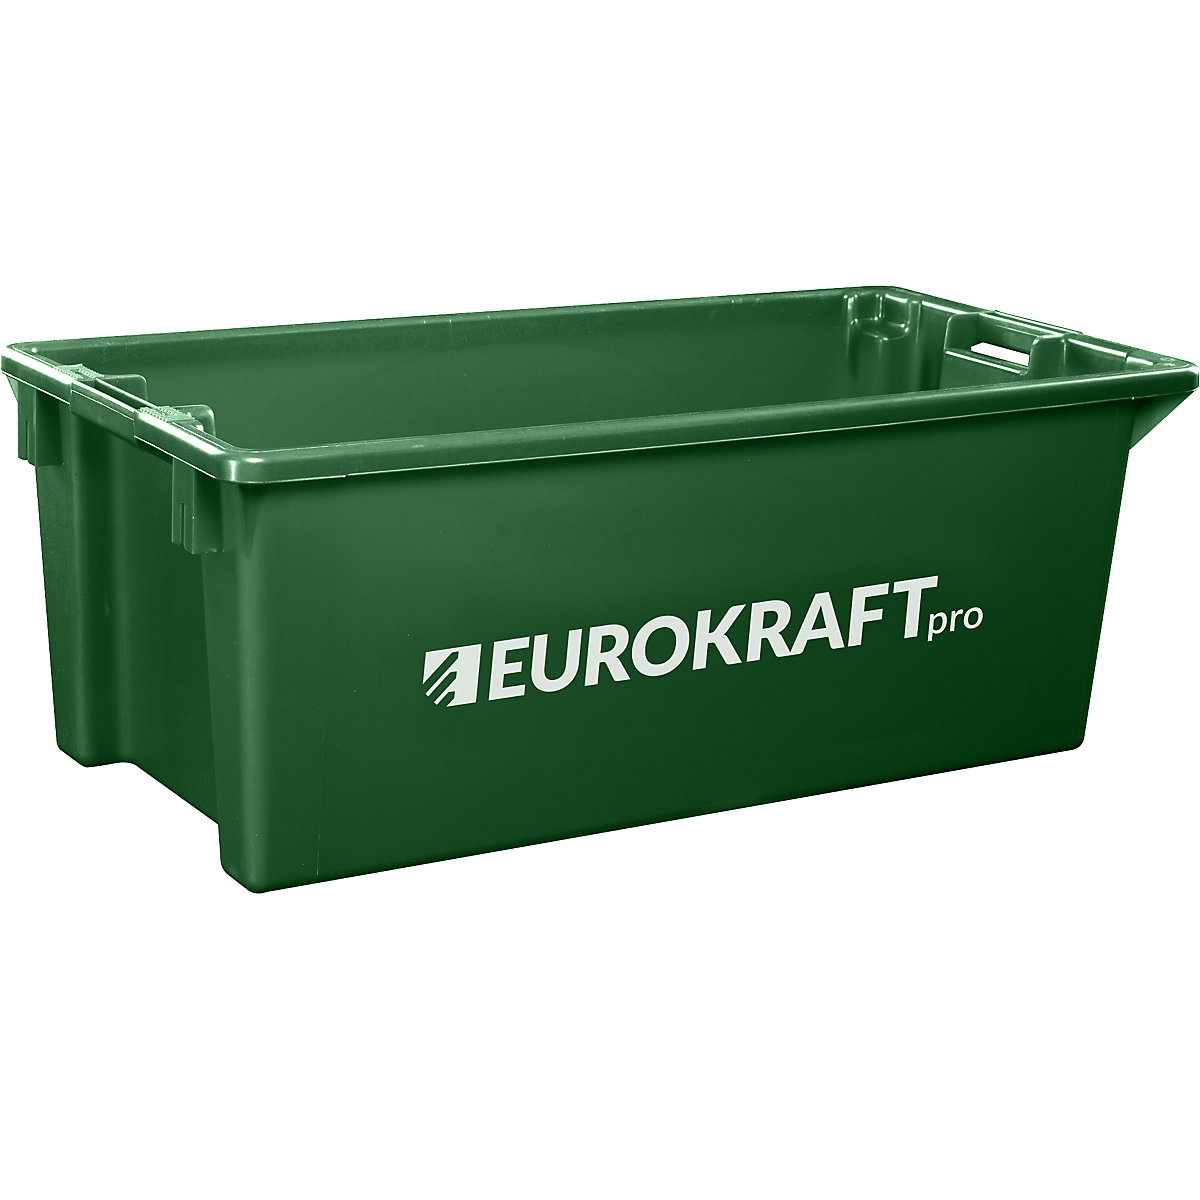 EUROKRAFTpro – Otočná stohovacia nádoba z polypropylénu vhodného pre potraviny, objem 13 litrov, OJ 4 ks, steny a dno uzatvorené, zelená